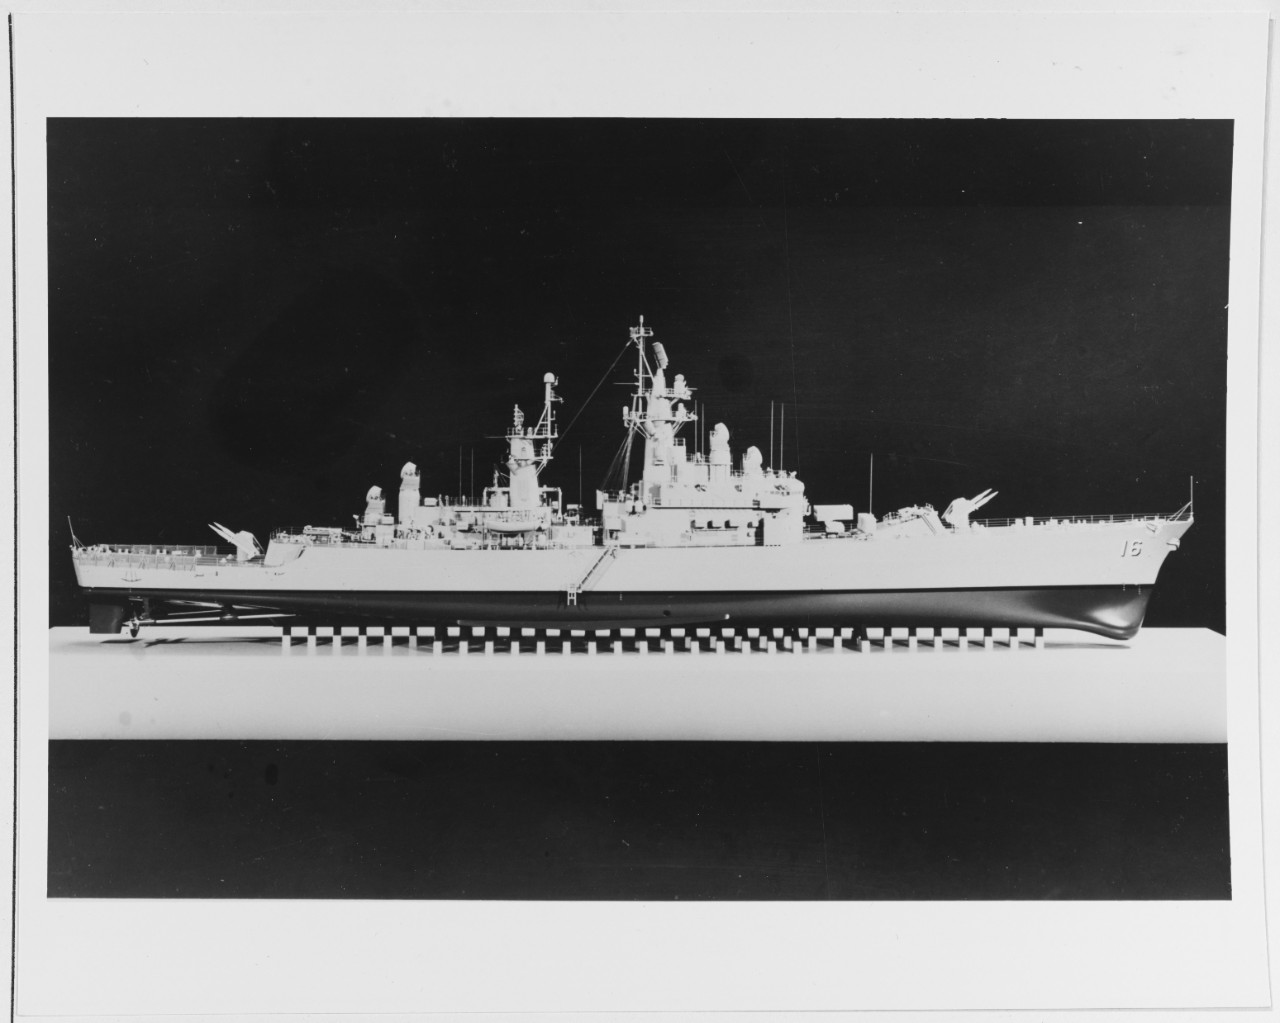 USS LEAHY (DLG-16)